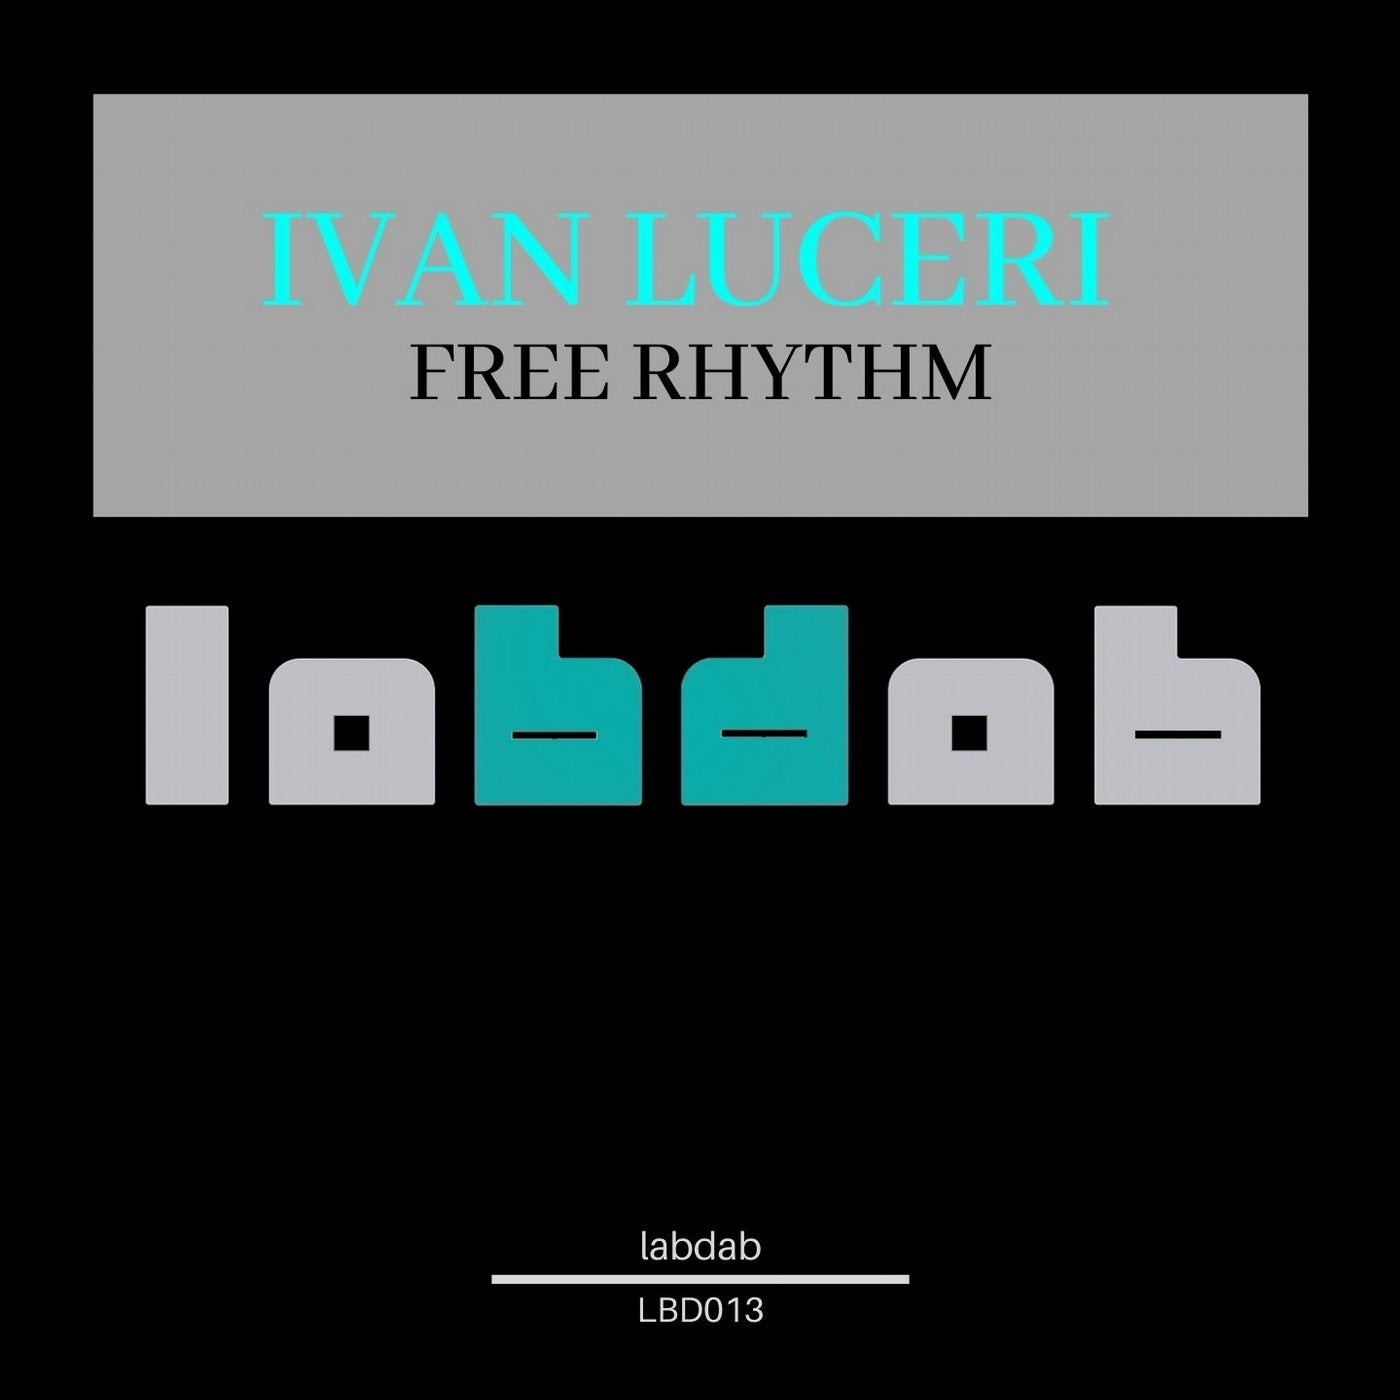 Free Rhythm